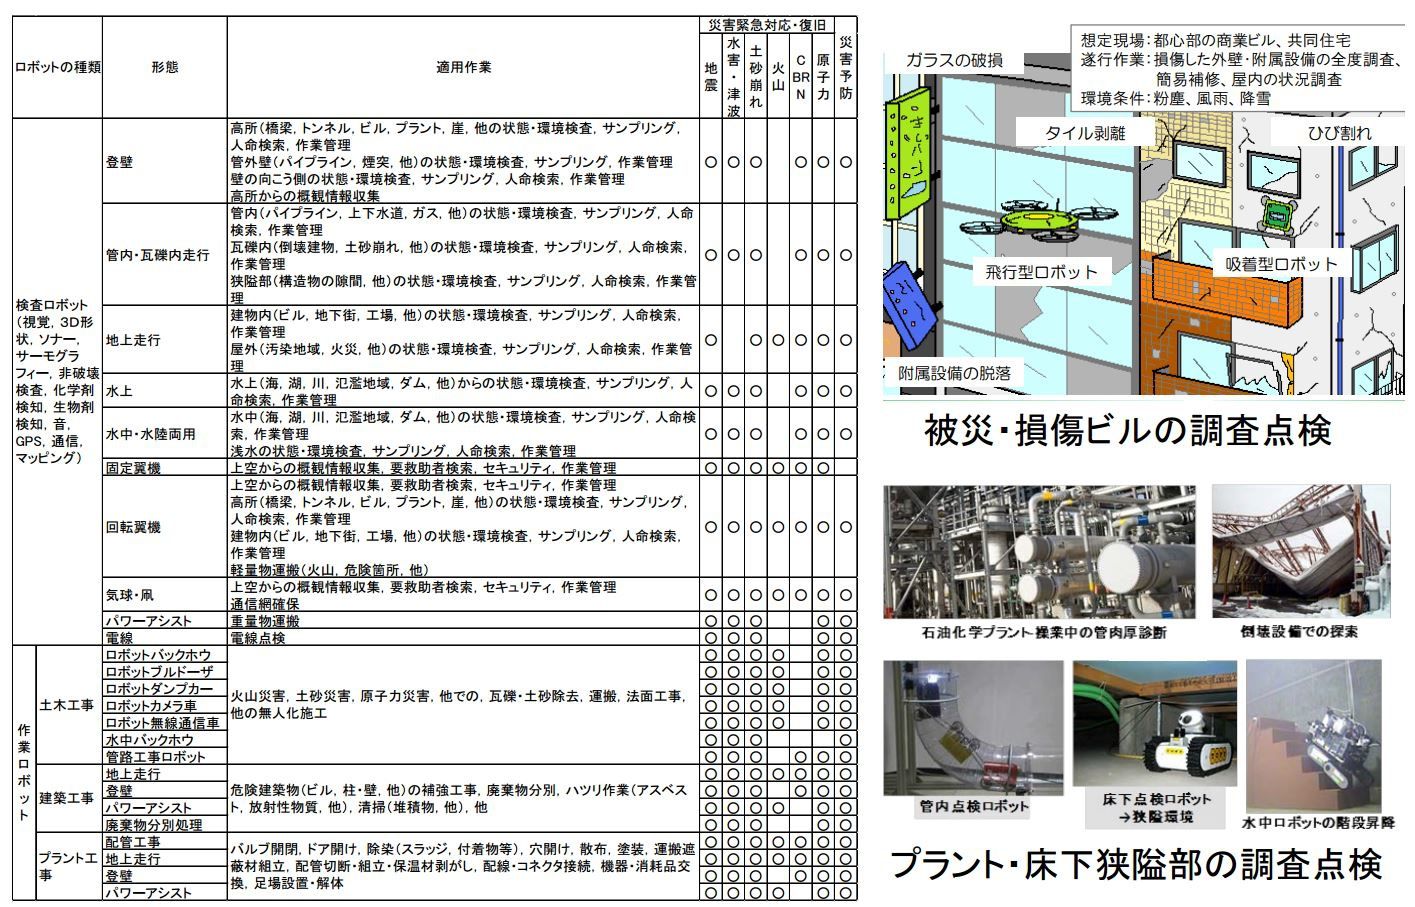 Gestion robotisée des risques liés aux séismes (http://www.kantei.go.jp/jp/singi/robot/dai3/siryou1-4.pdf)